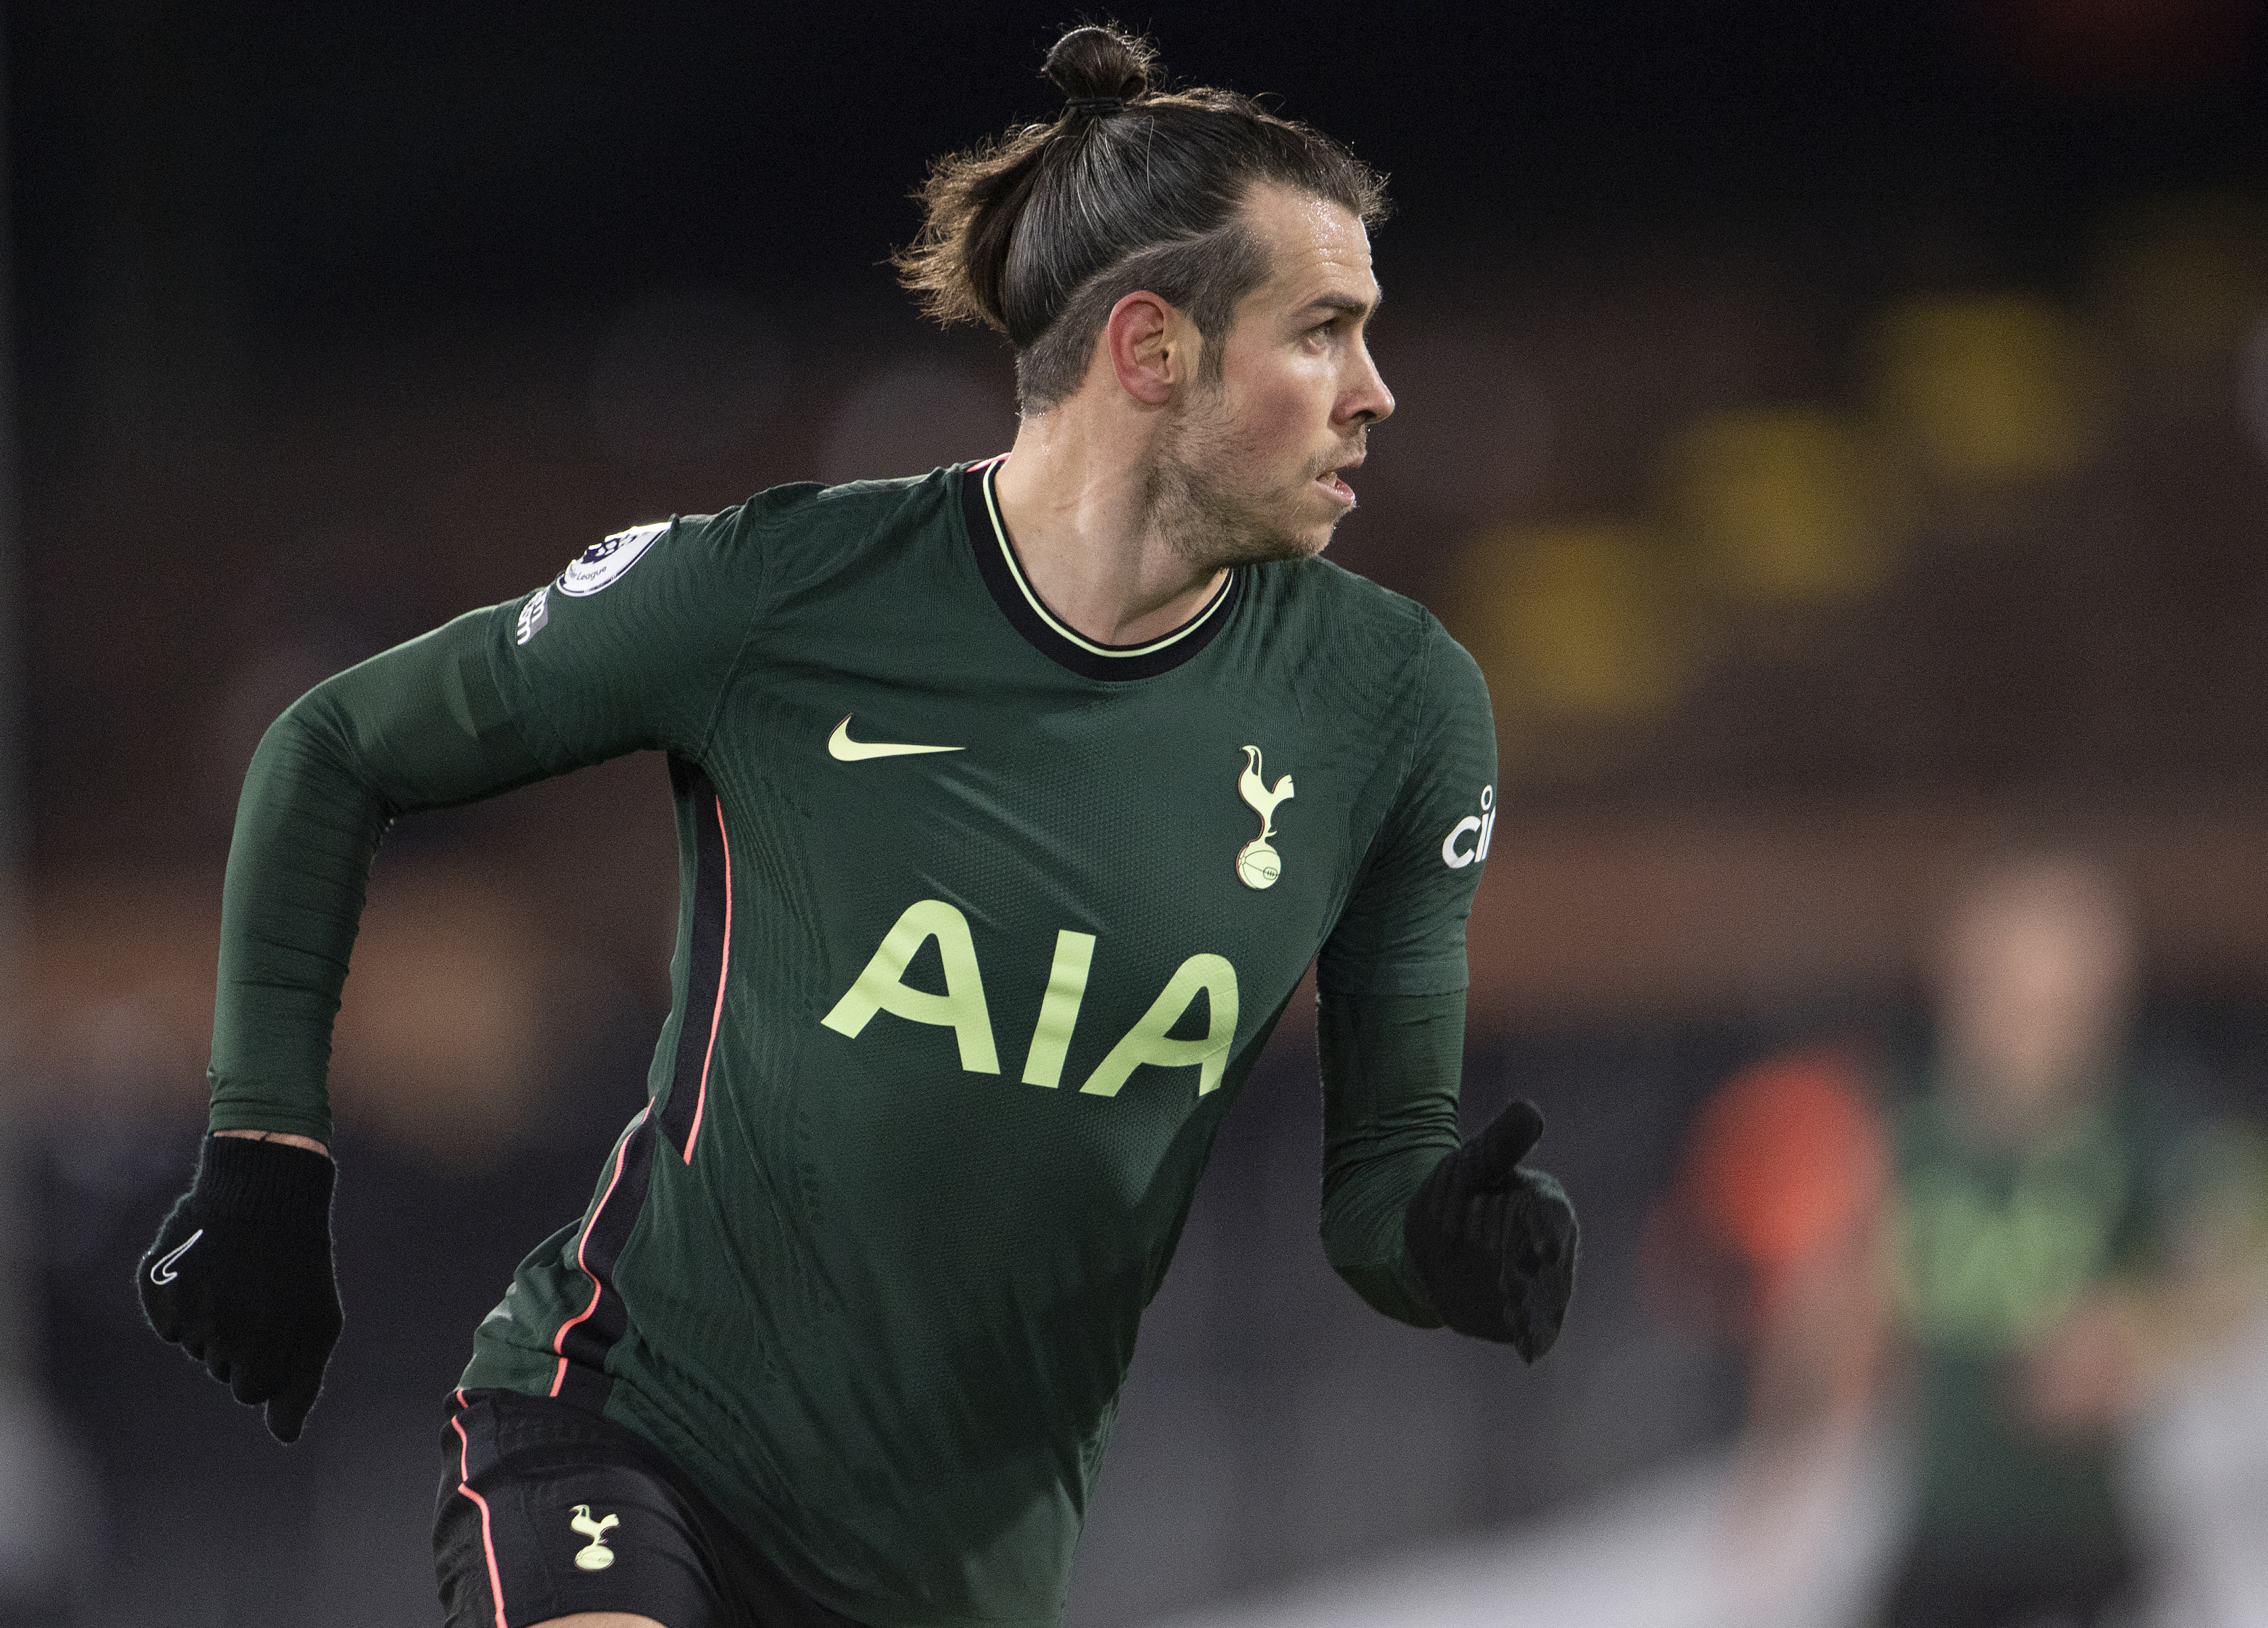 Bale will not return to Tottenham - Nuno